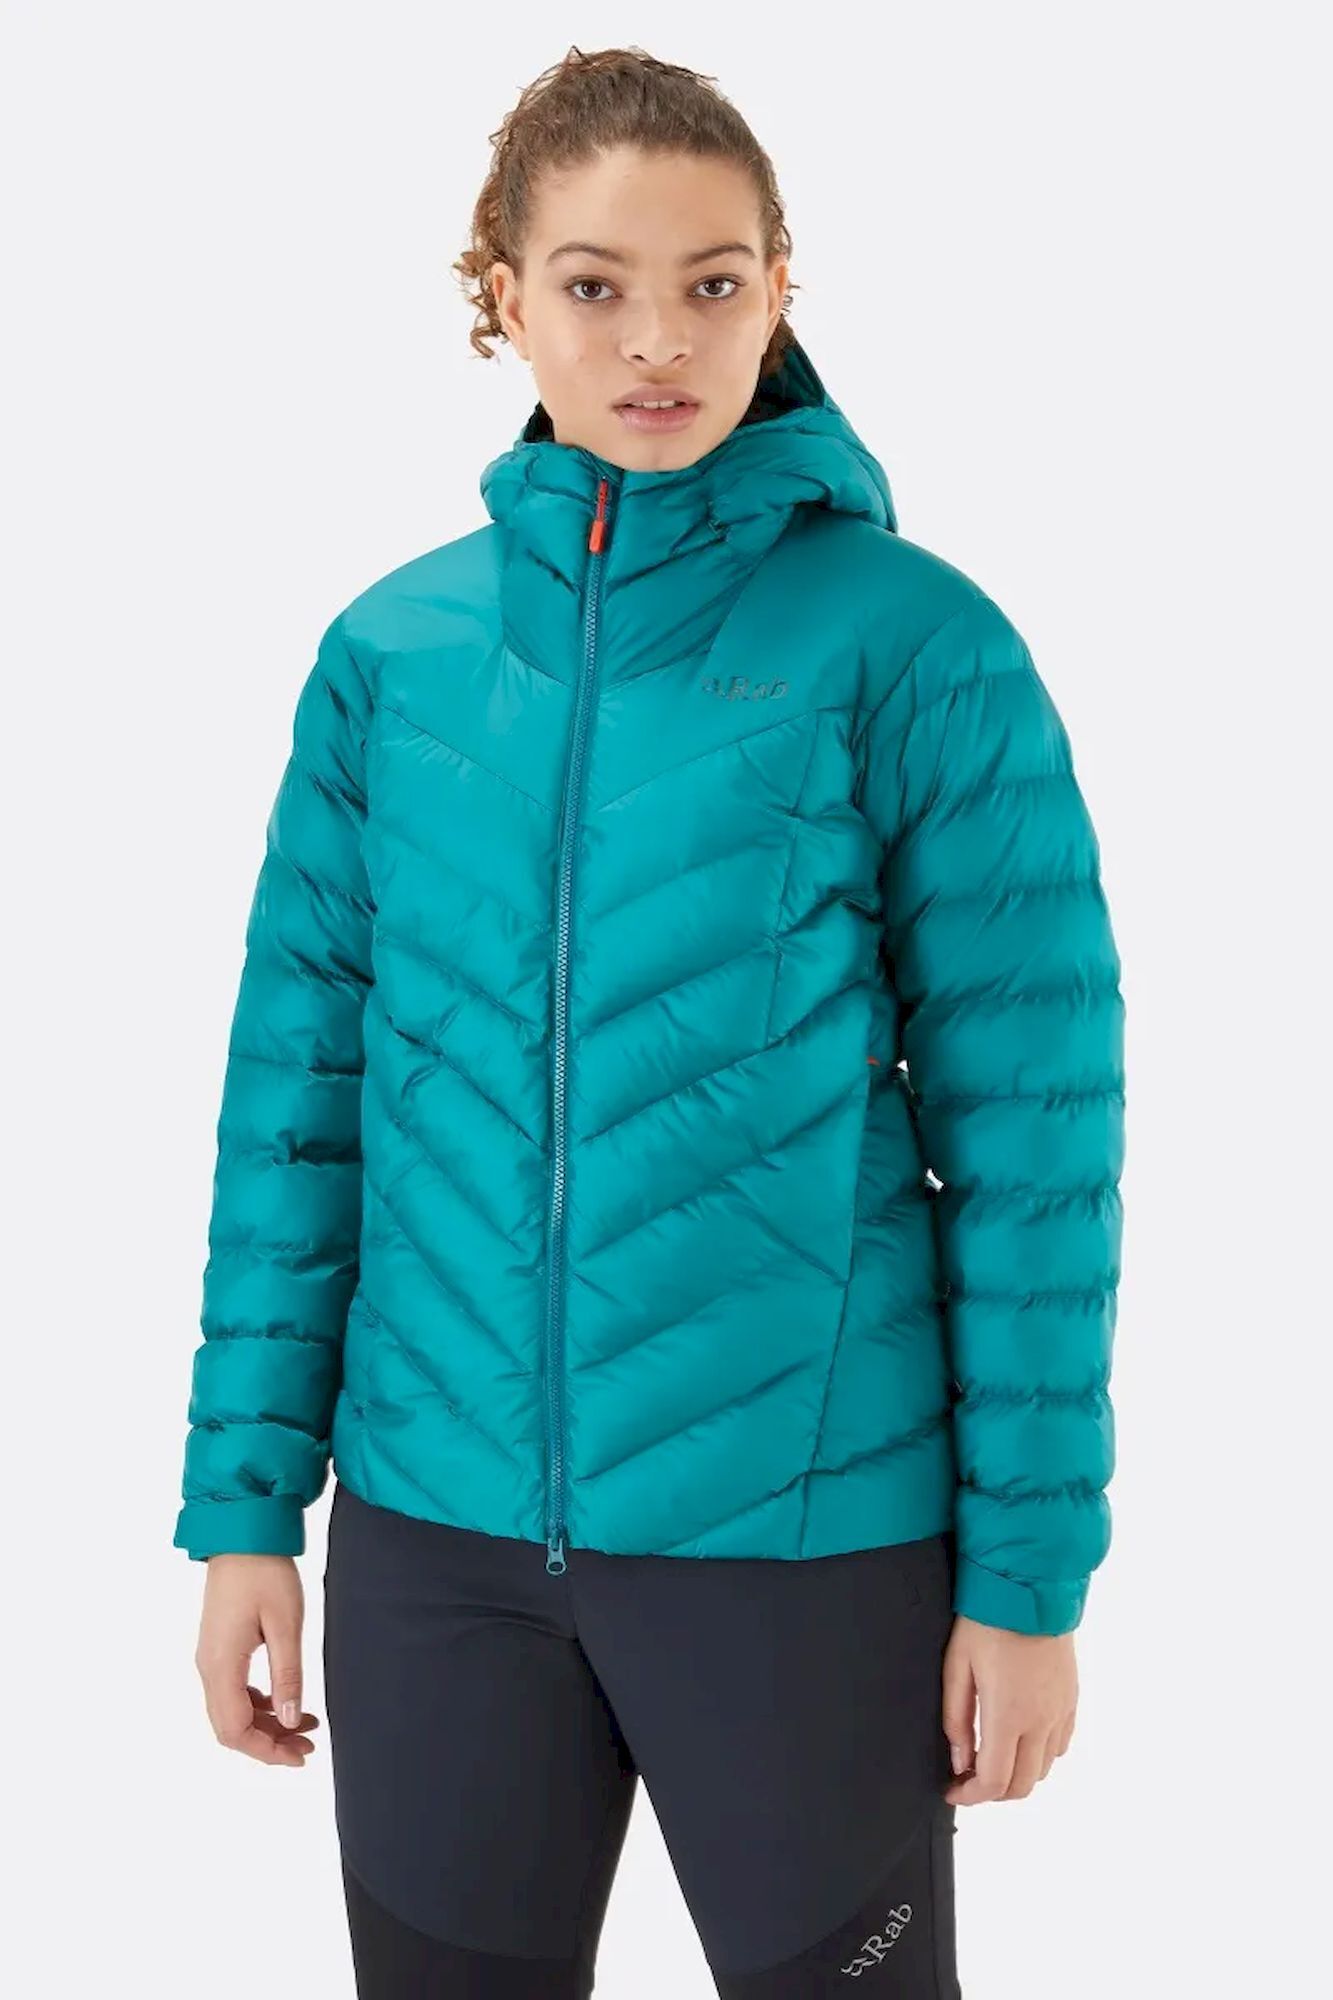 Rab Nebula Pro Jacket  - Synthetic jacket - Women's